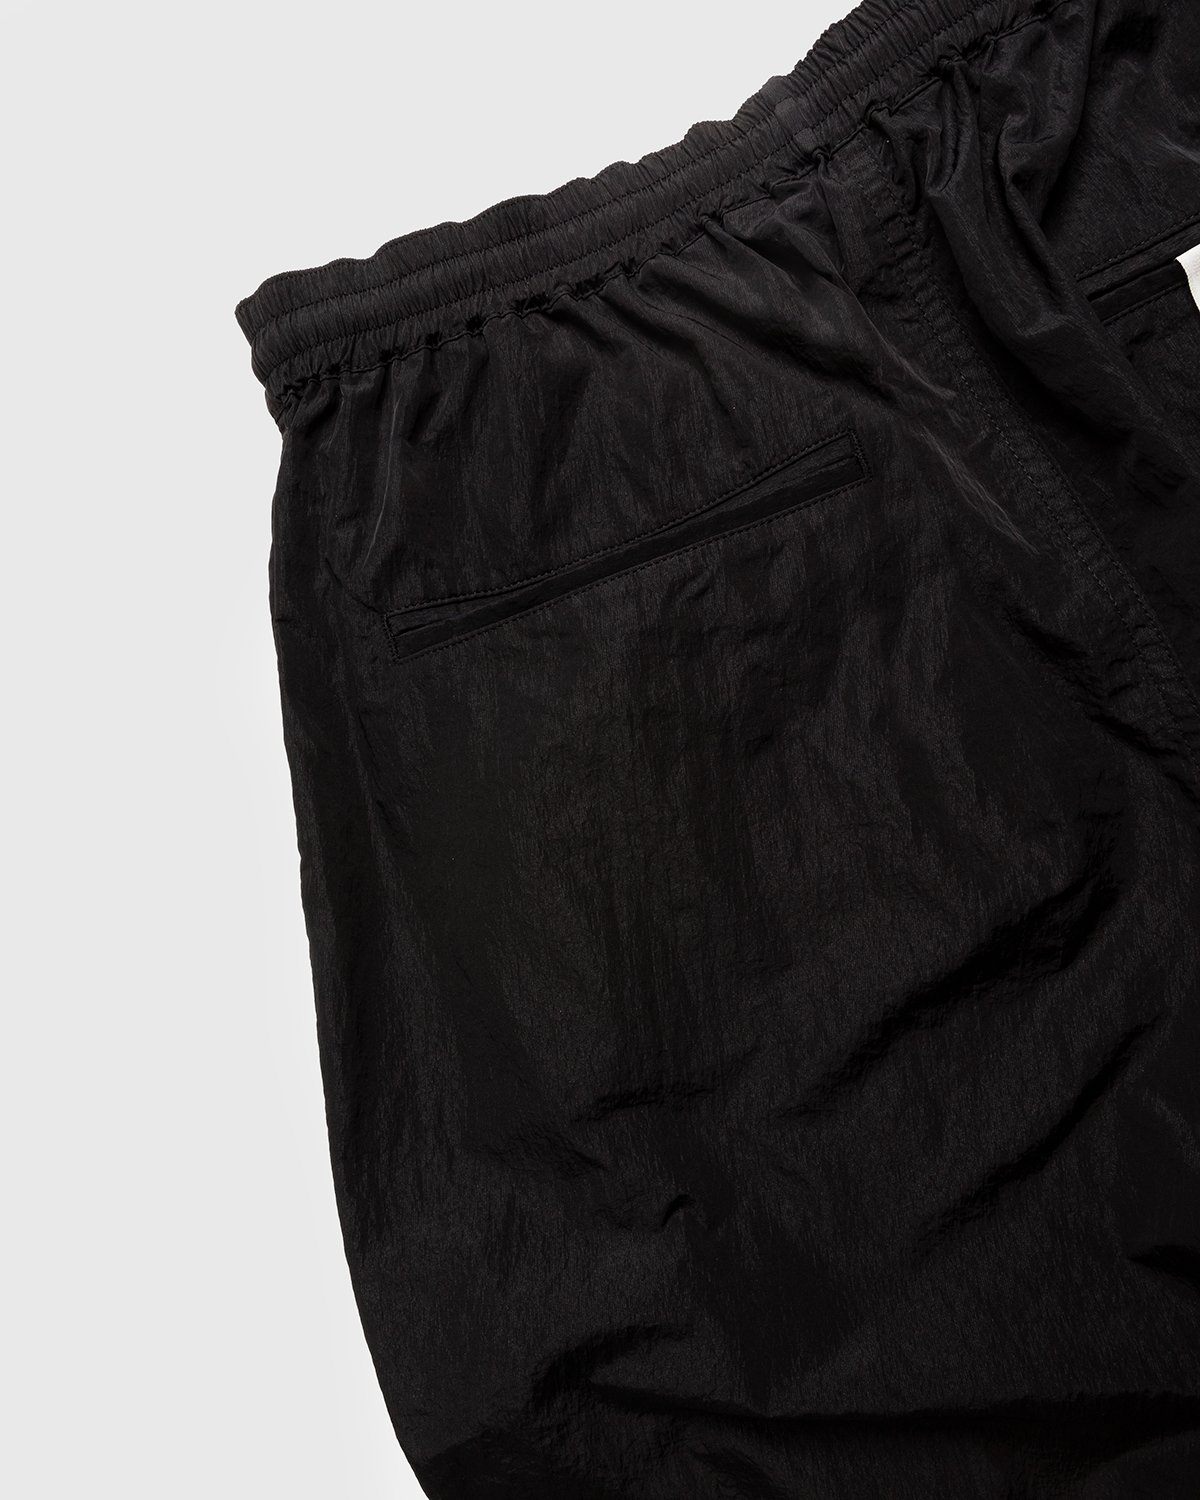 Highsnobiety - Crepe Nylon Elastic Pants Black - Clothing - Black - Image 4